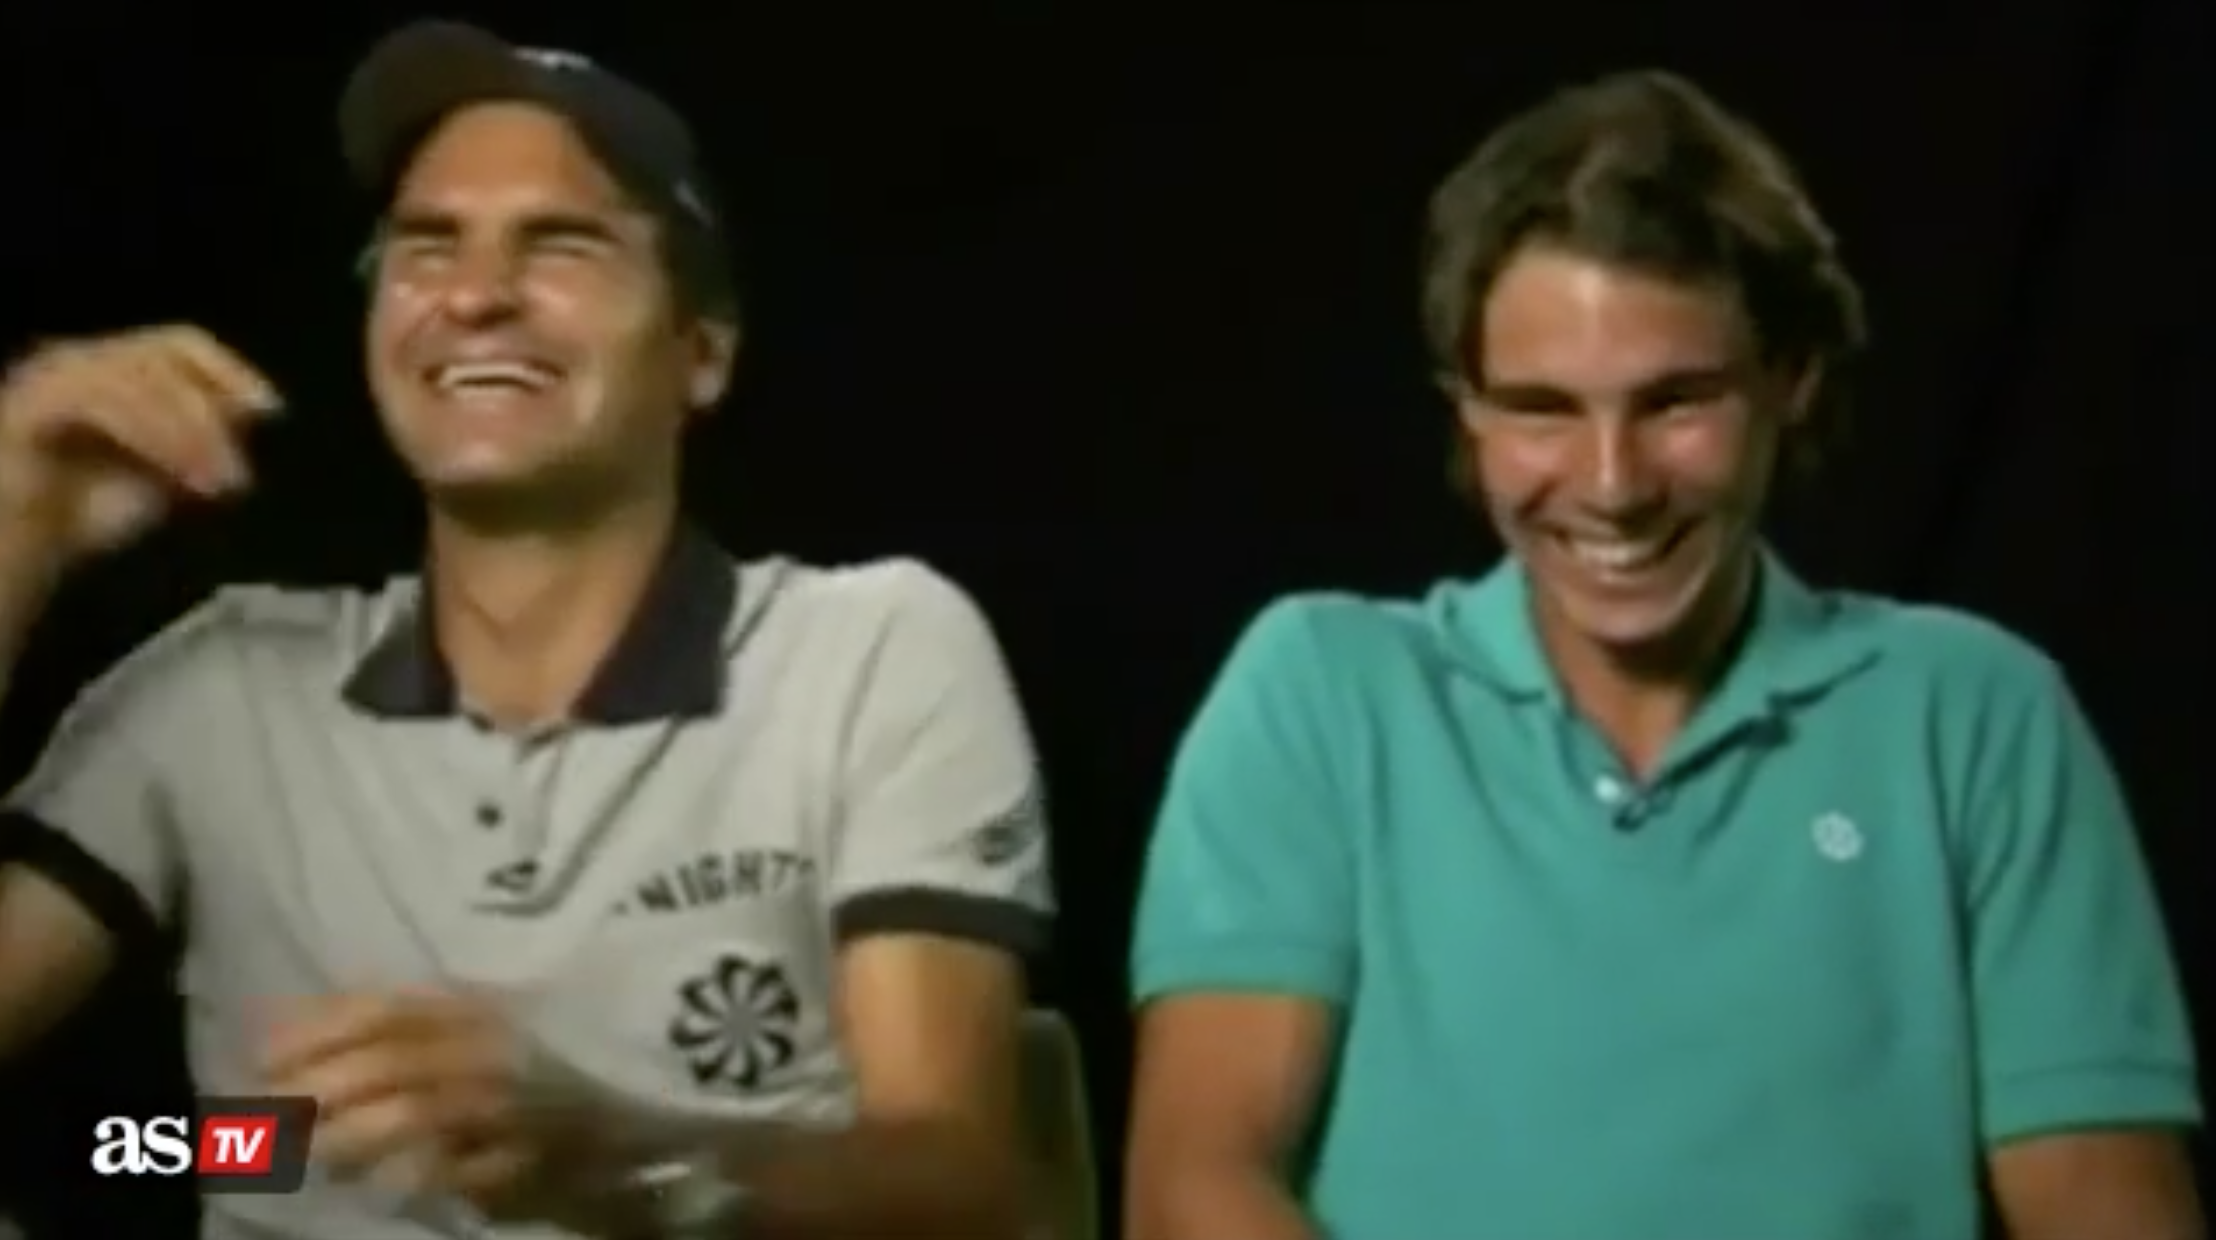 El día que a Federer y Nadal les dio un ataque de risa incontrolable